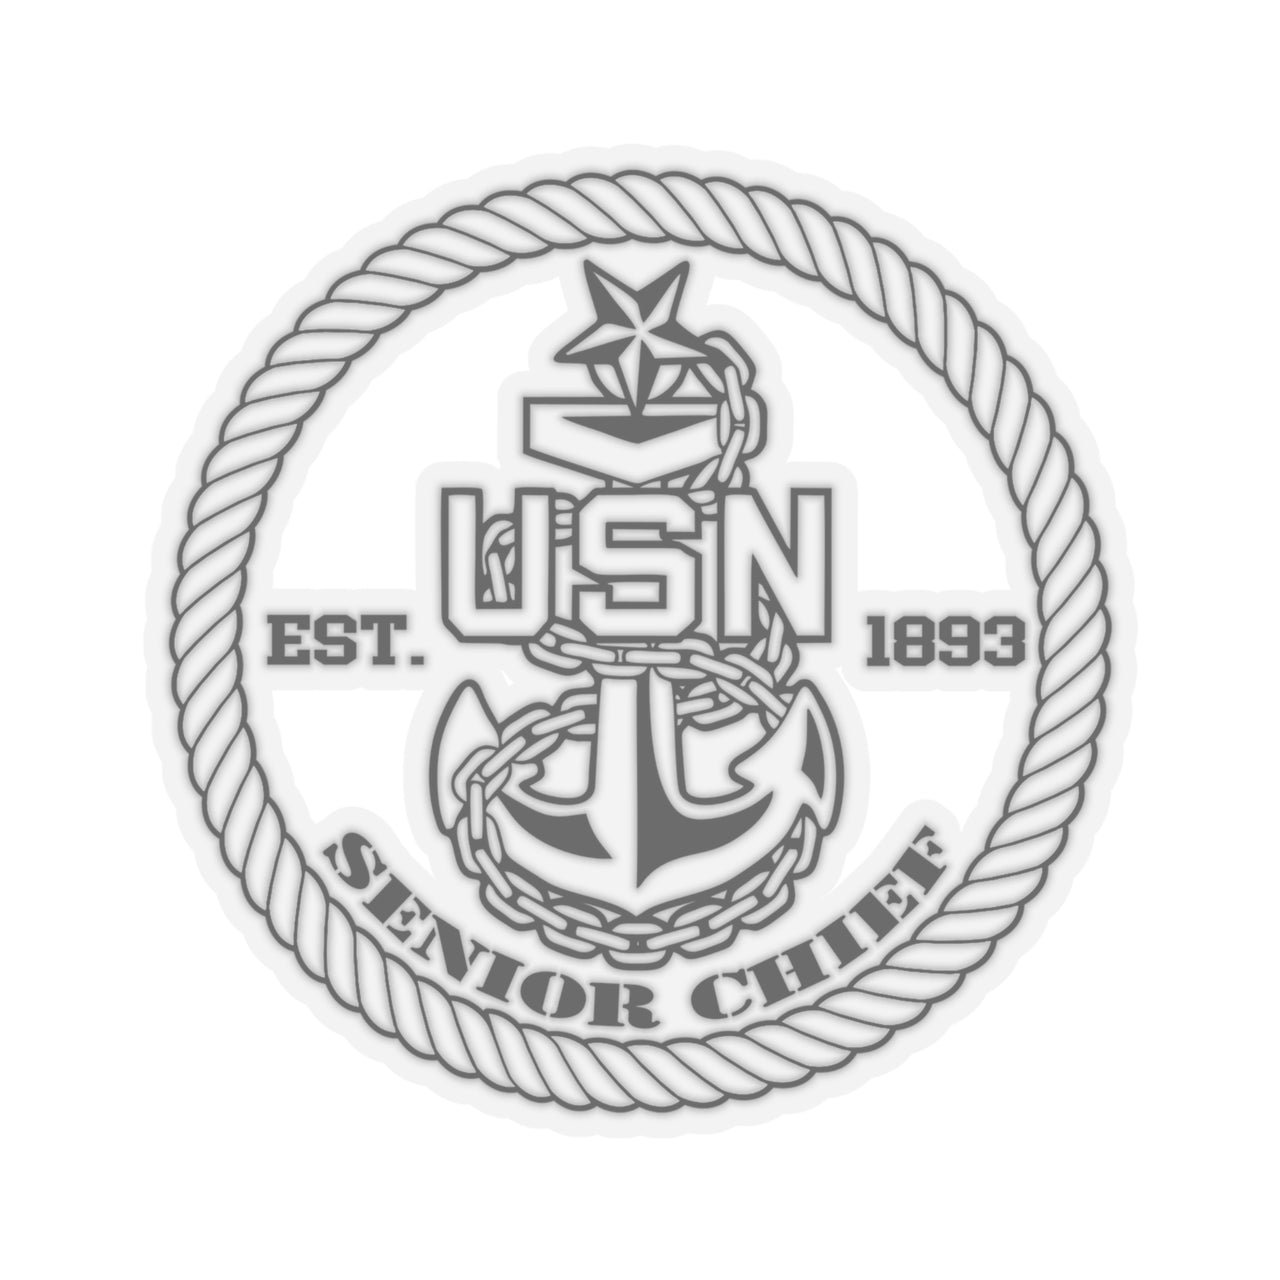 Navy Senior Chief Sticker